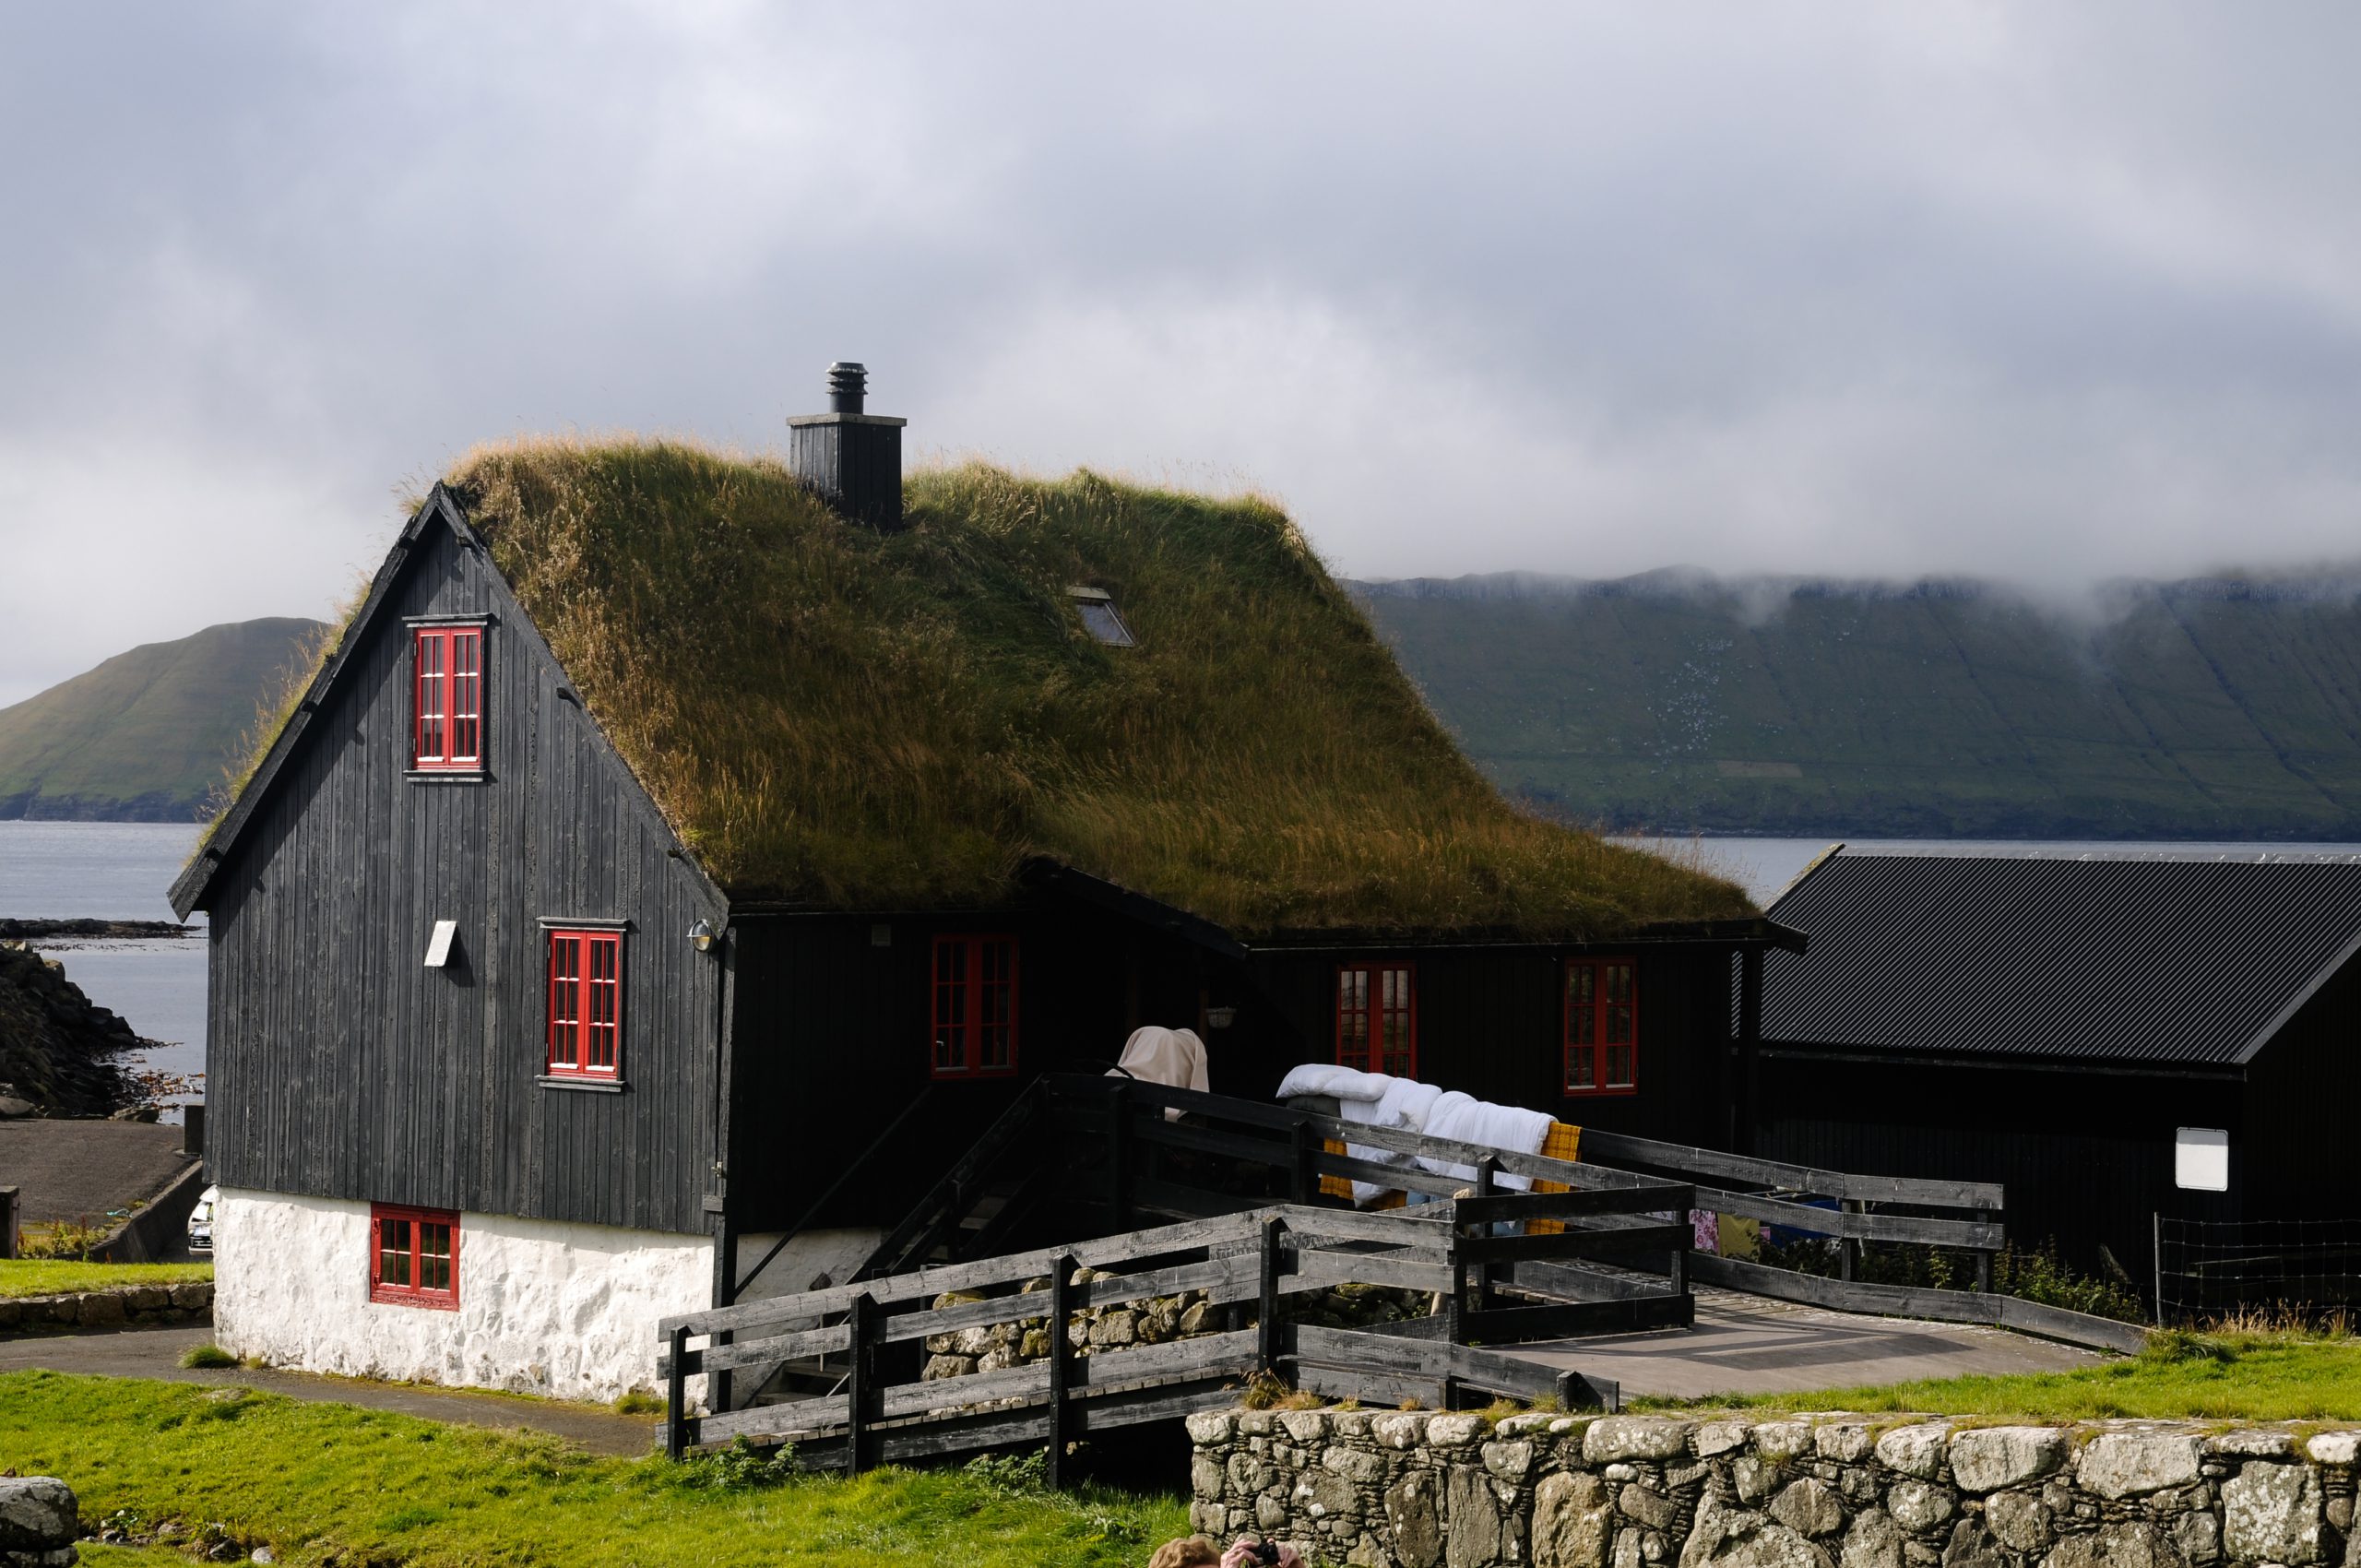 Kirkjubøur hoort bij de gemeente Tórshavn